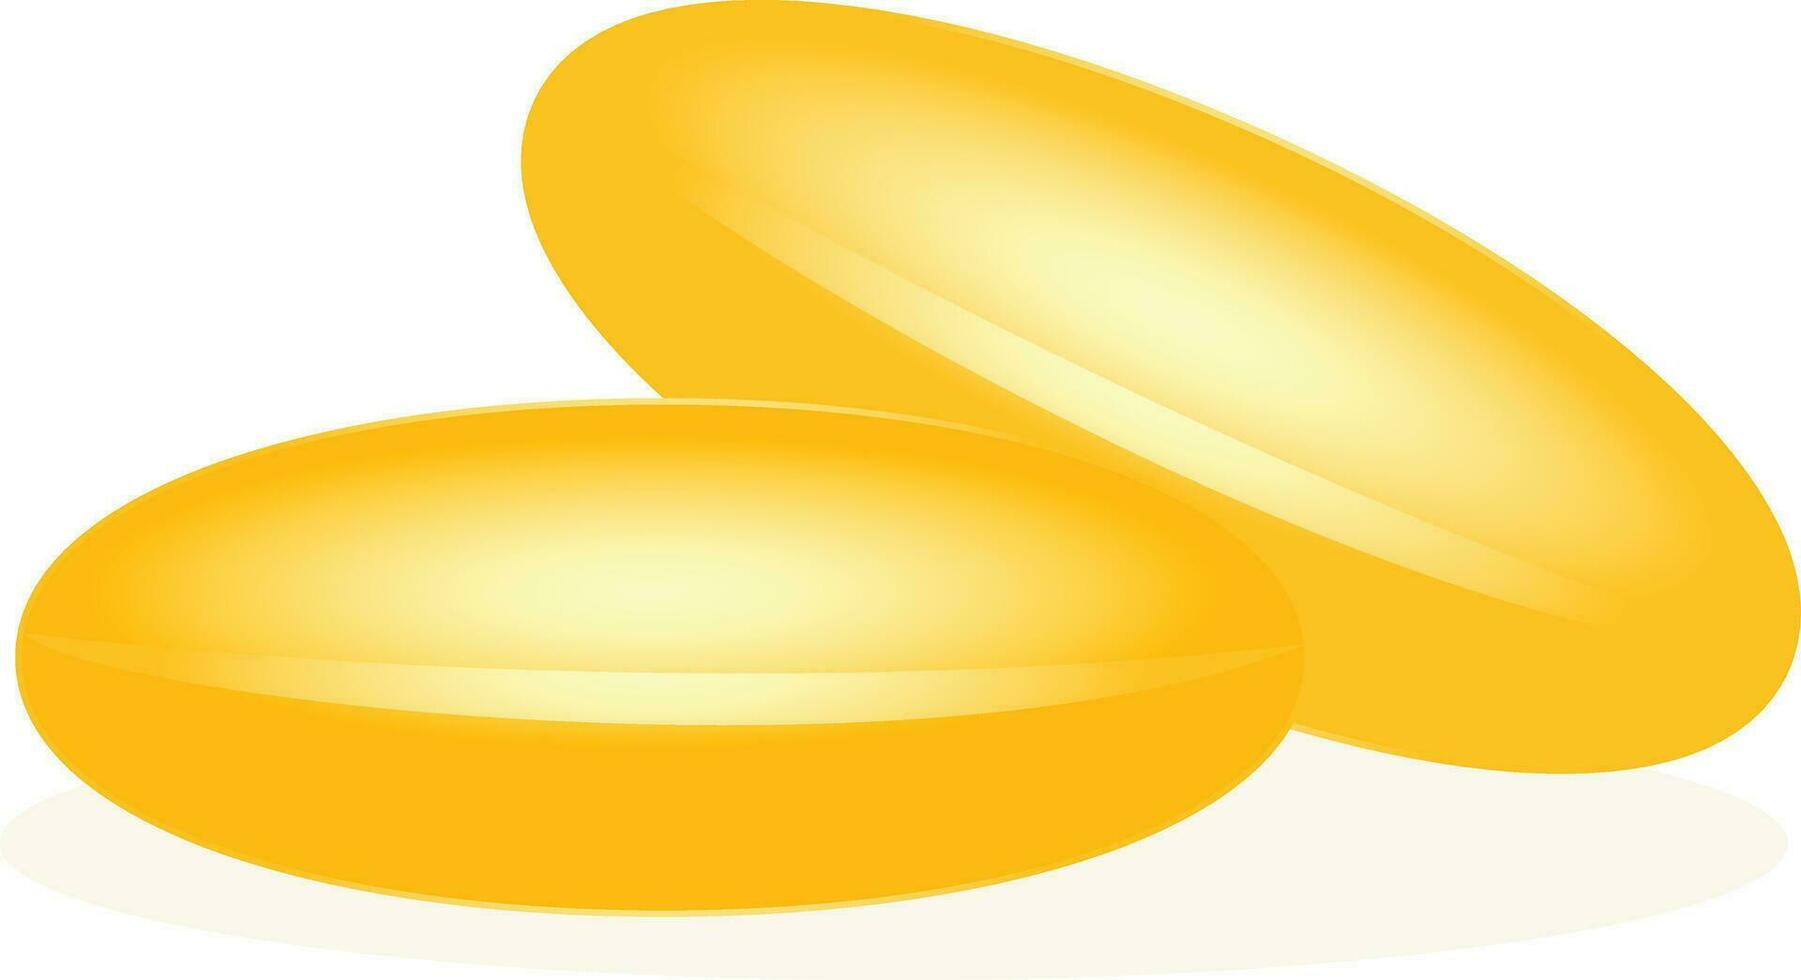 Omega 3 6 9 fish oil capsule pills vector illustration, Omega vitamin krill oil pills stock vector image